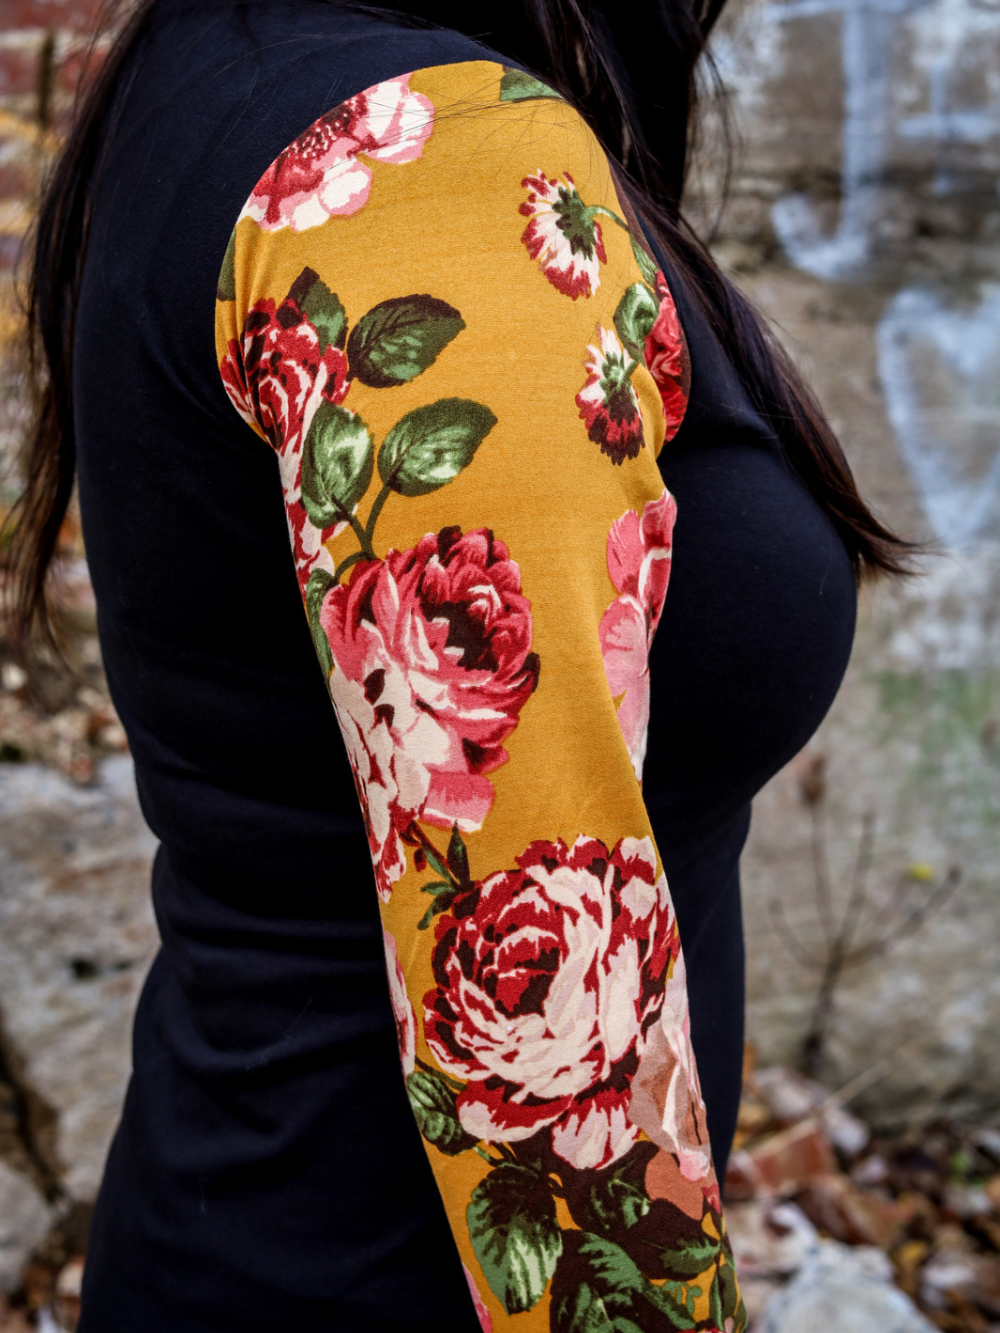 Robe Sophie - Noir, manches fleurs roses sur fond jaune